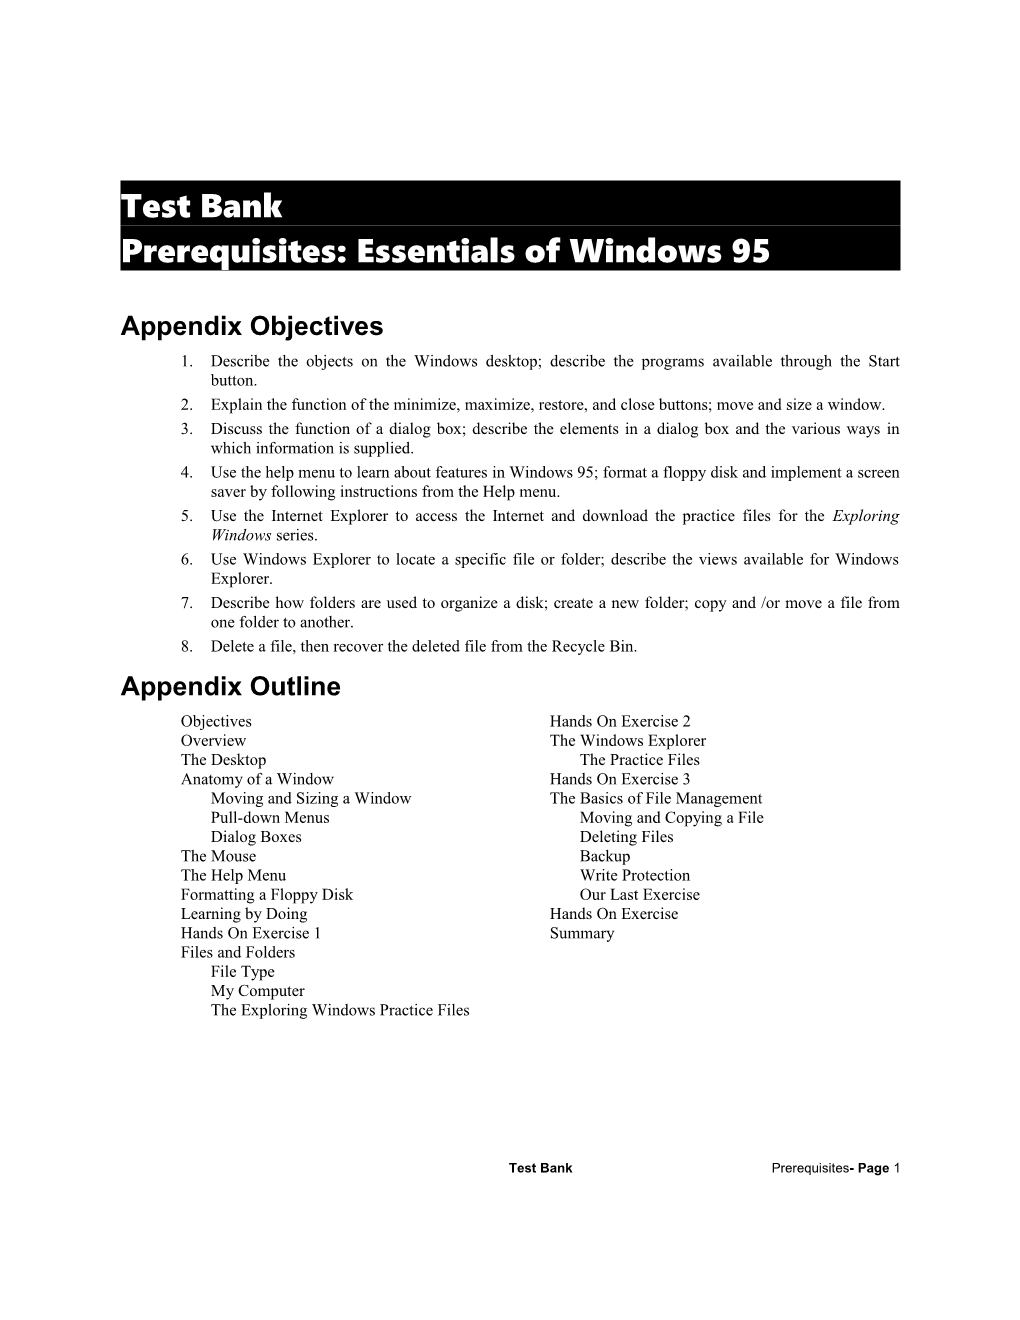 Prerequisites: Essentials of Windows 95